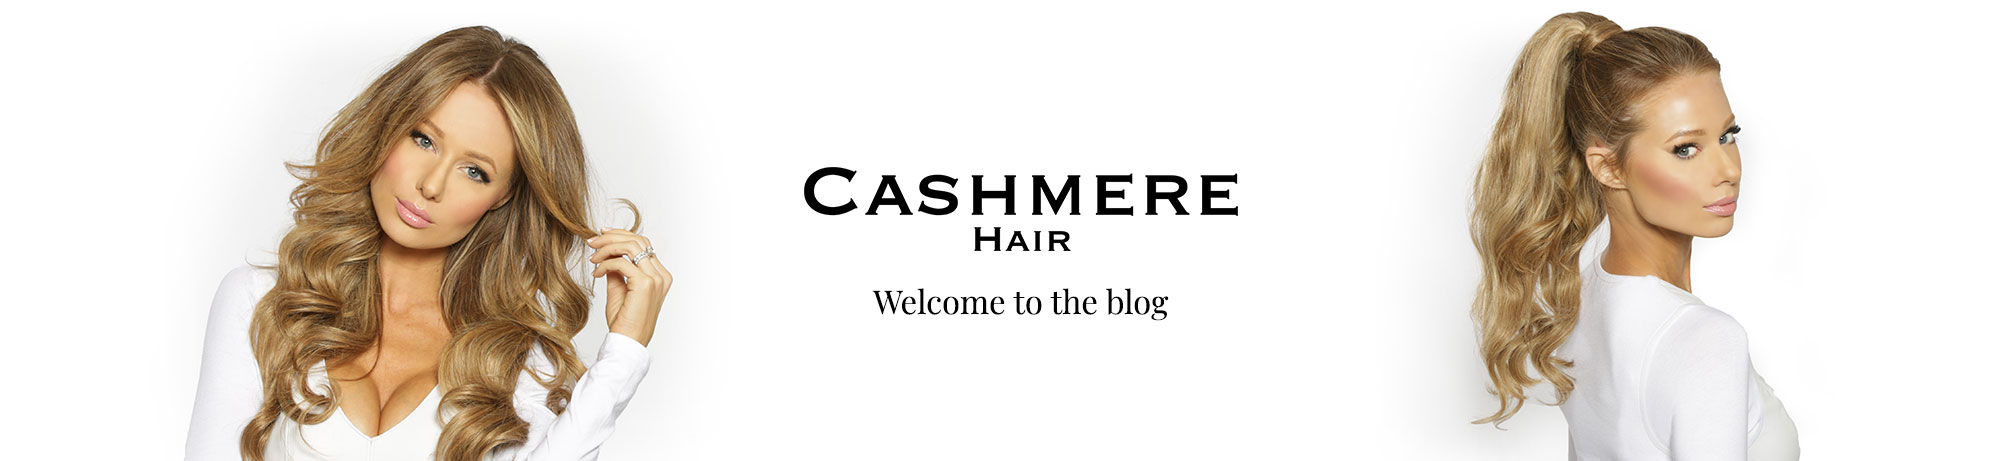 CASHMERE HAIR